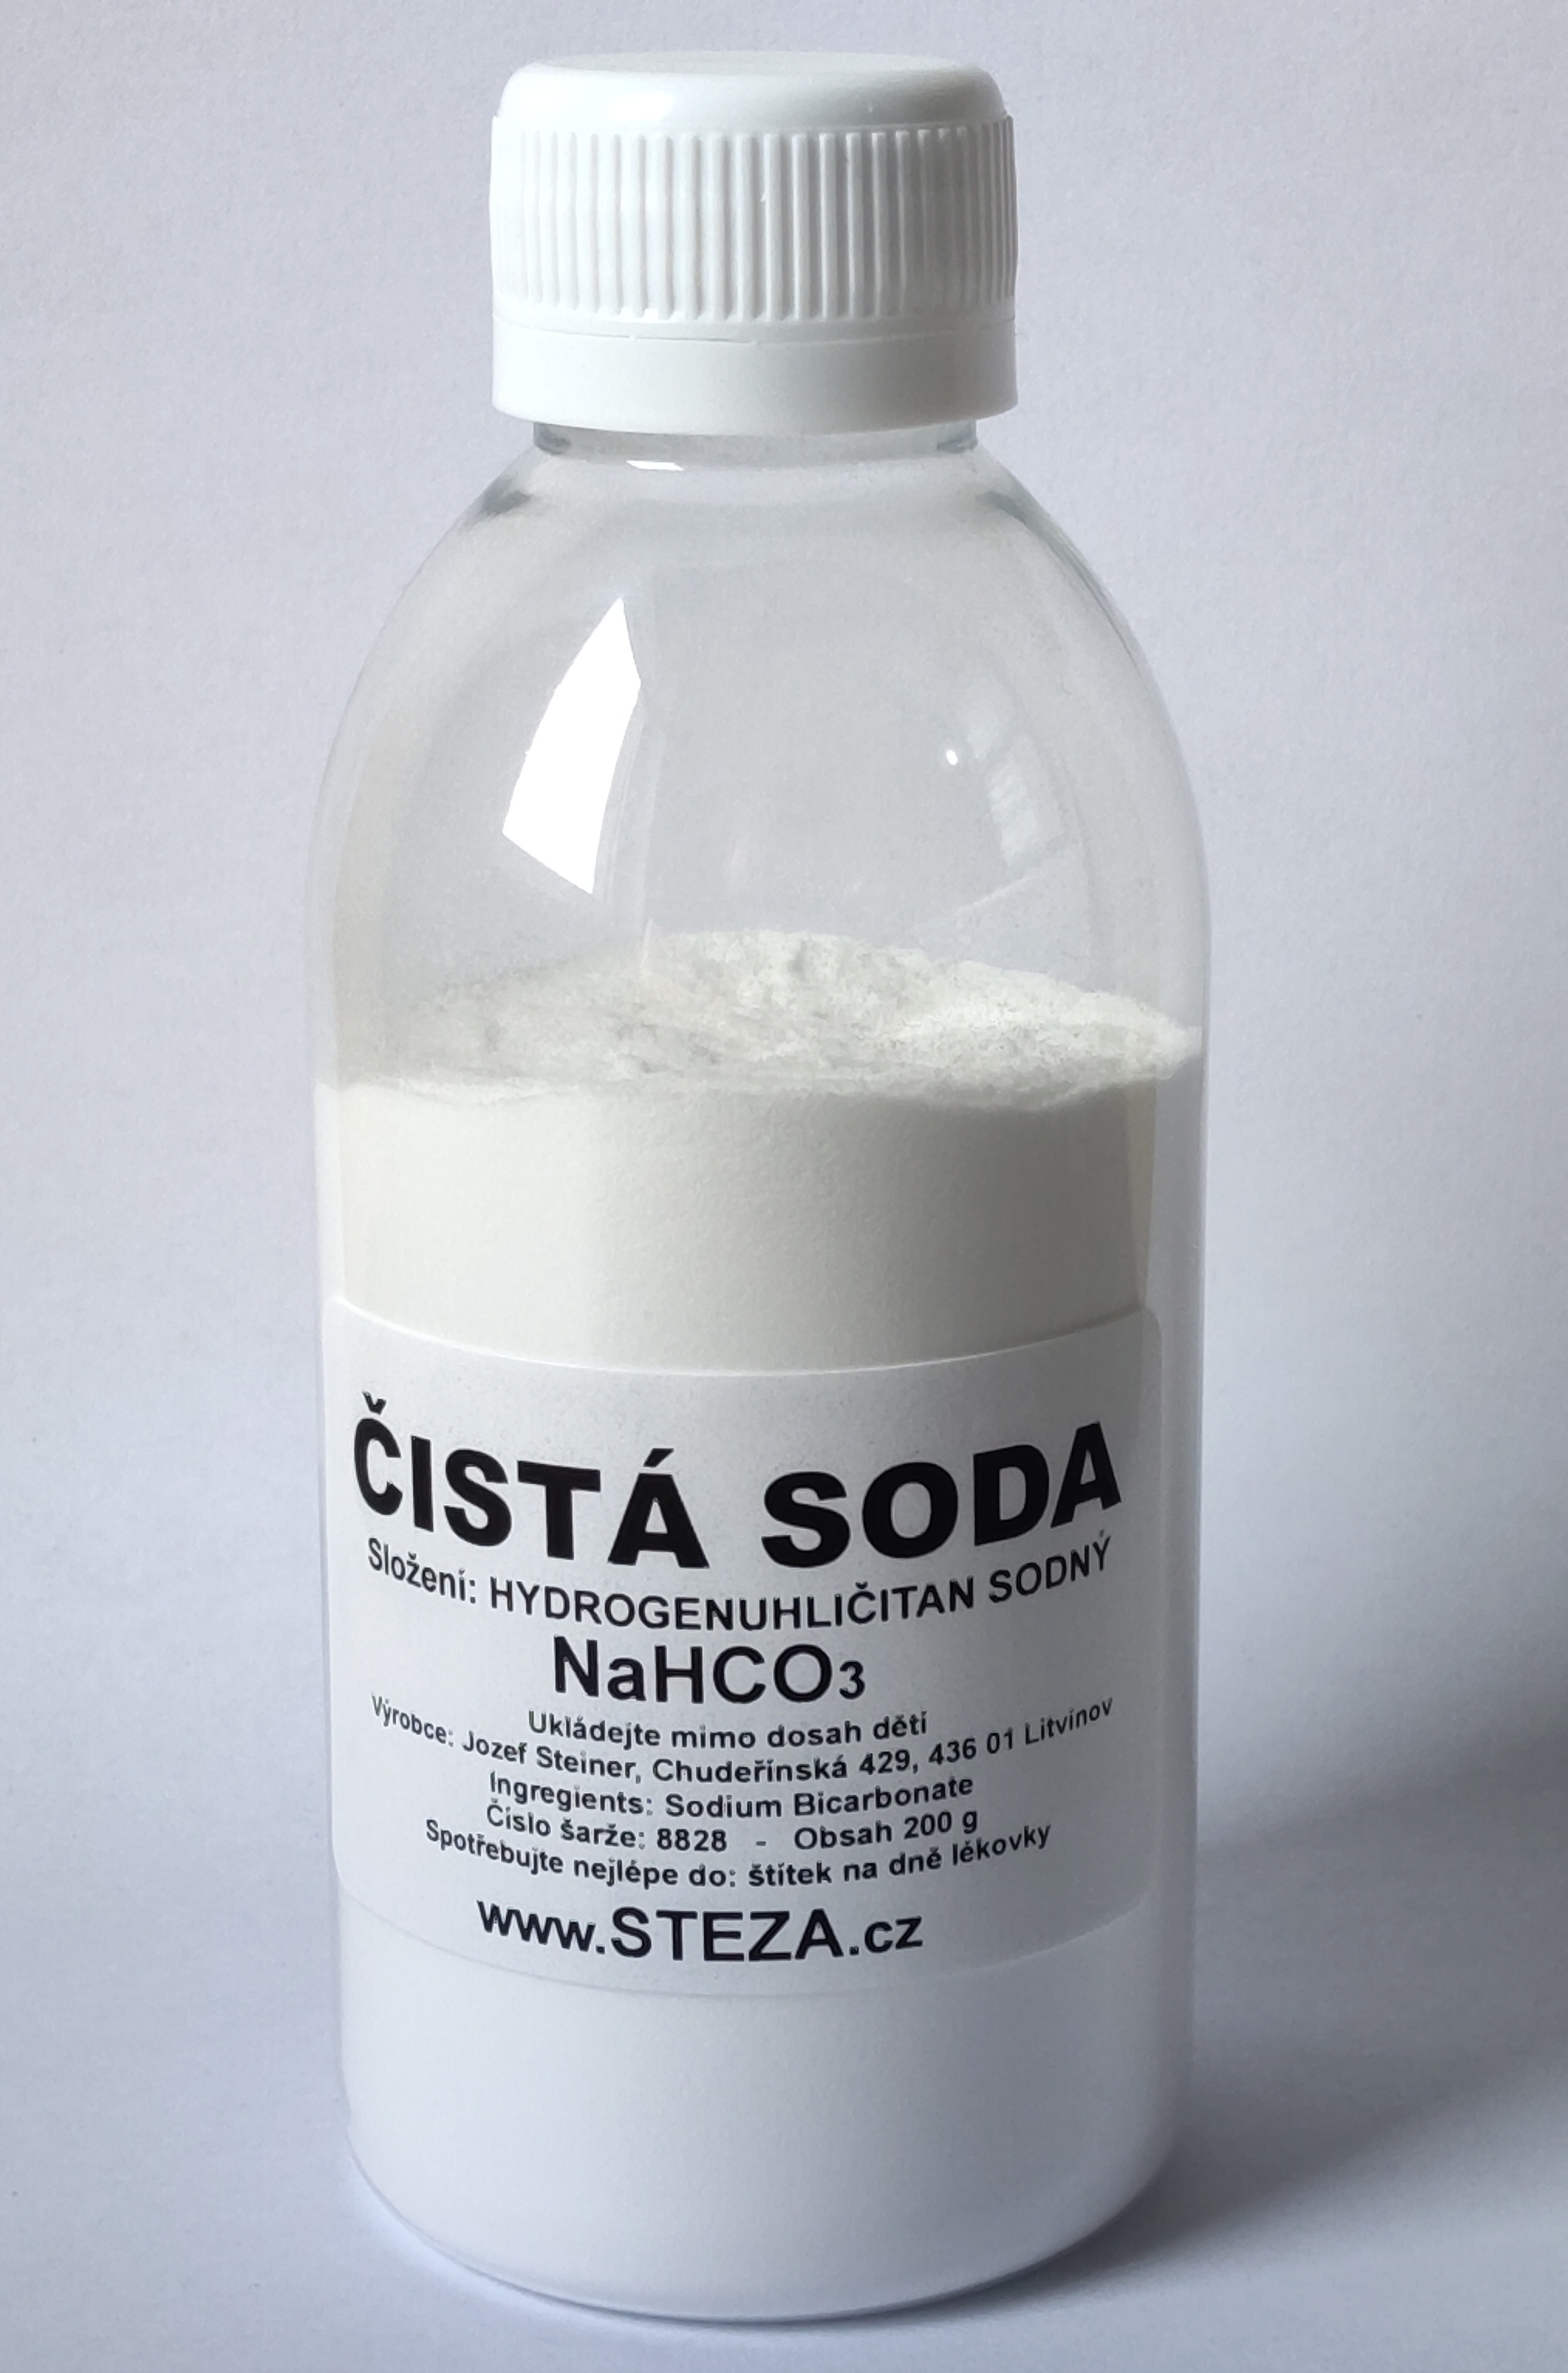 STEZA - Čistá soda 600g NaHCO3